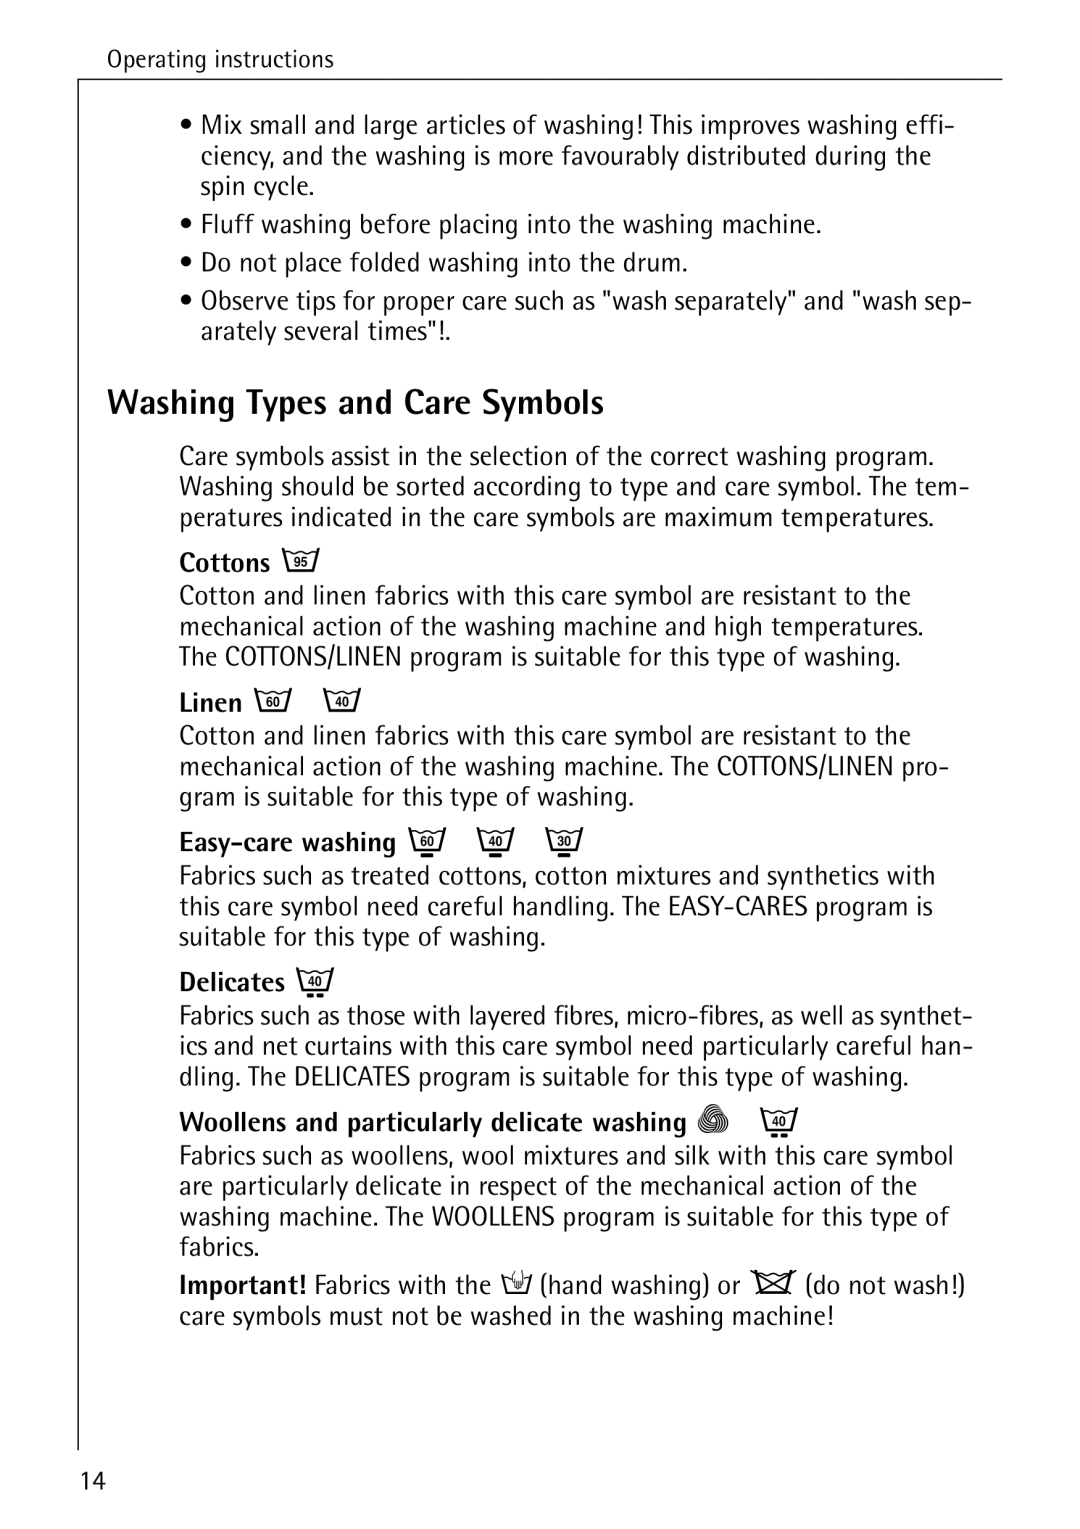 AEG W 1030 manual Washing Types and Care Symbols 